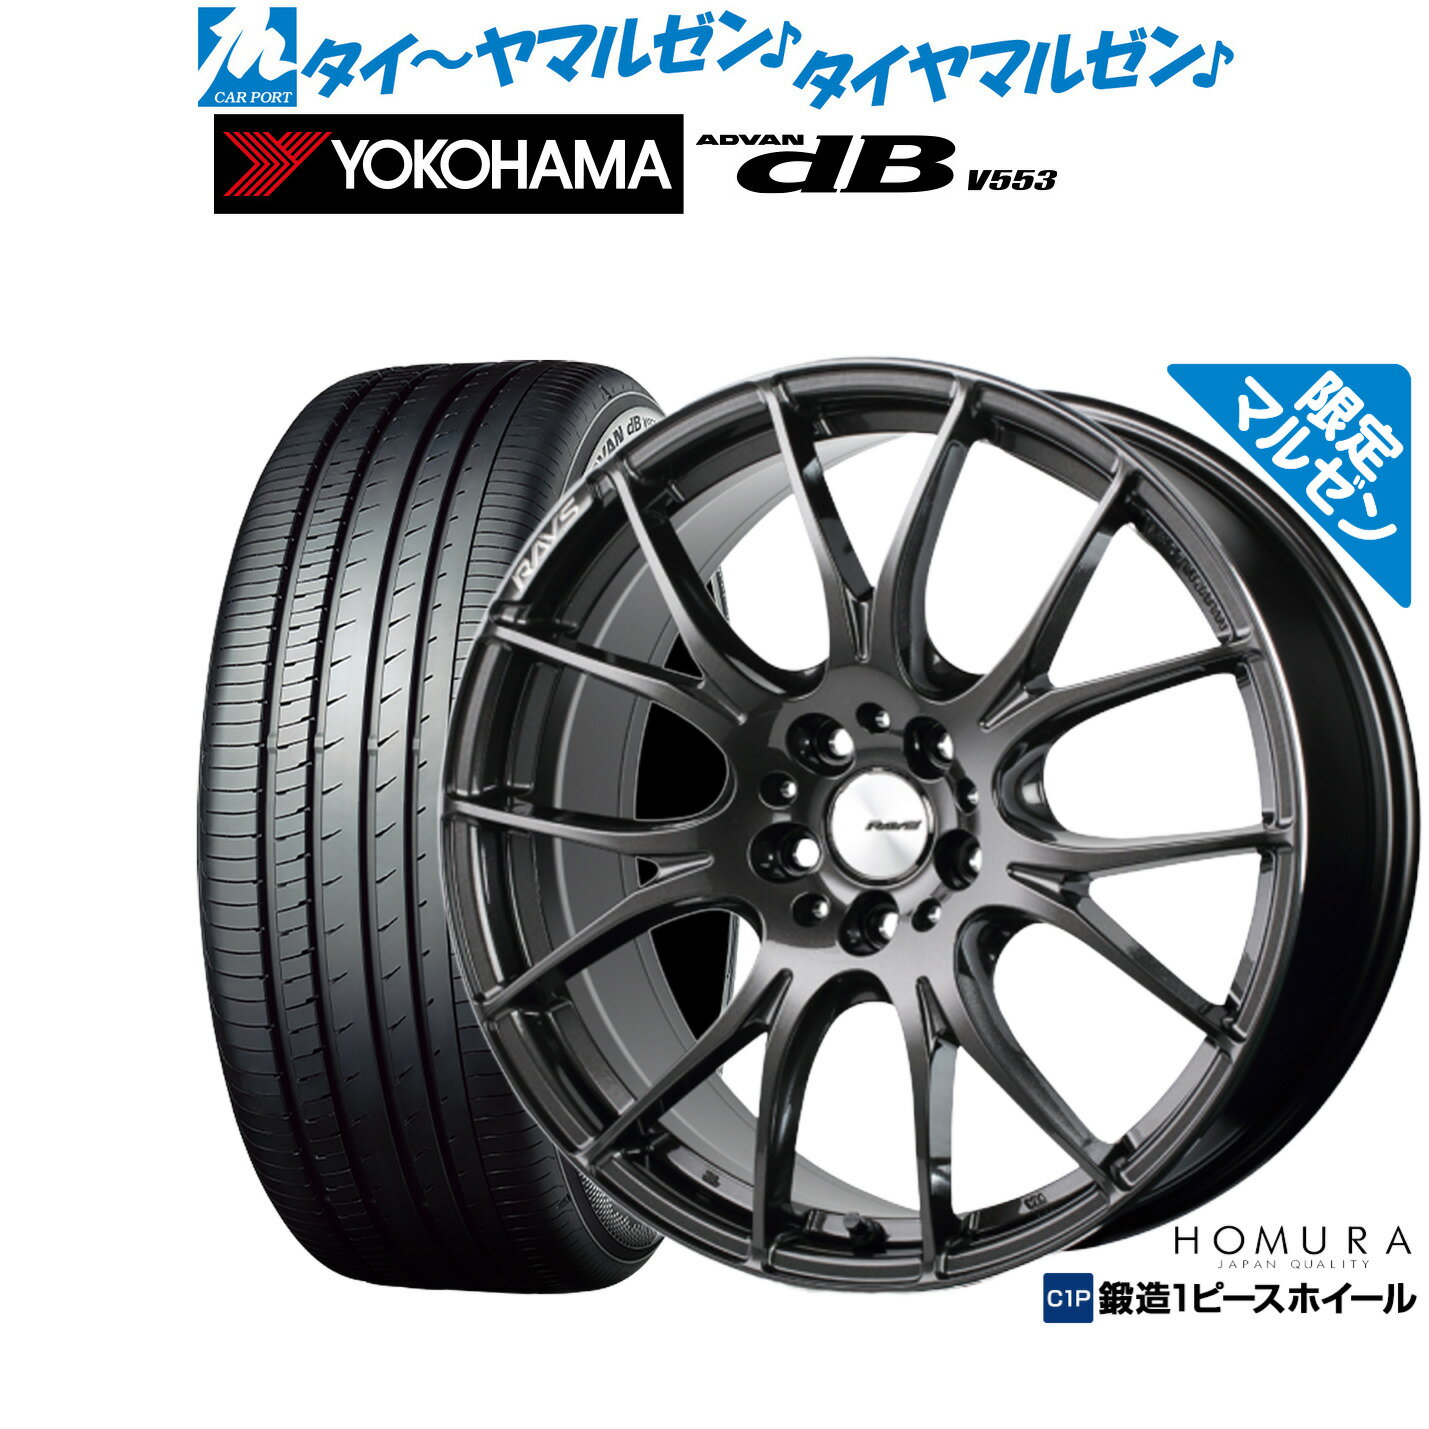 割引クーポン配布新品 サマータイヤ ホイール4本セットレイズ HOMURA ホムラ 2×7 Limited Black(マルゼン限定品)19インチ 8.5Jヨコハマ ADVAN アドバン dB(V553)245/40R19